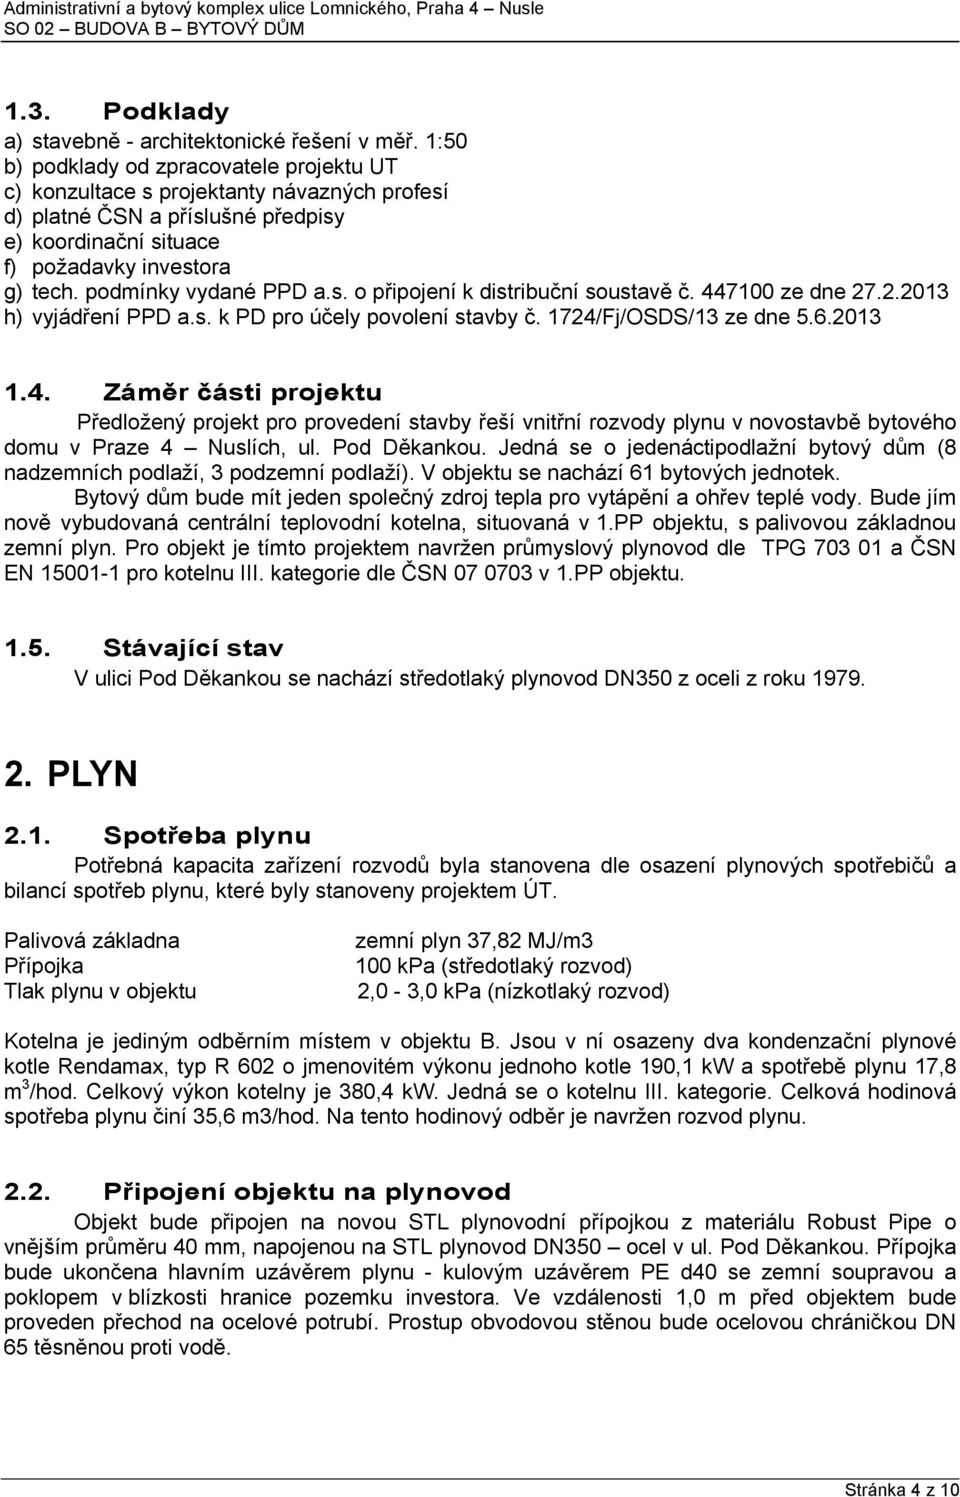 podmínky vydané PPD a.s. o připojení k distribuční soustavě č. 44